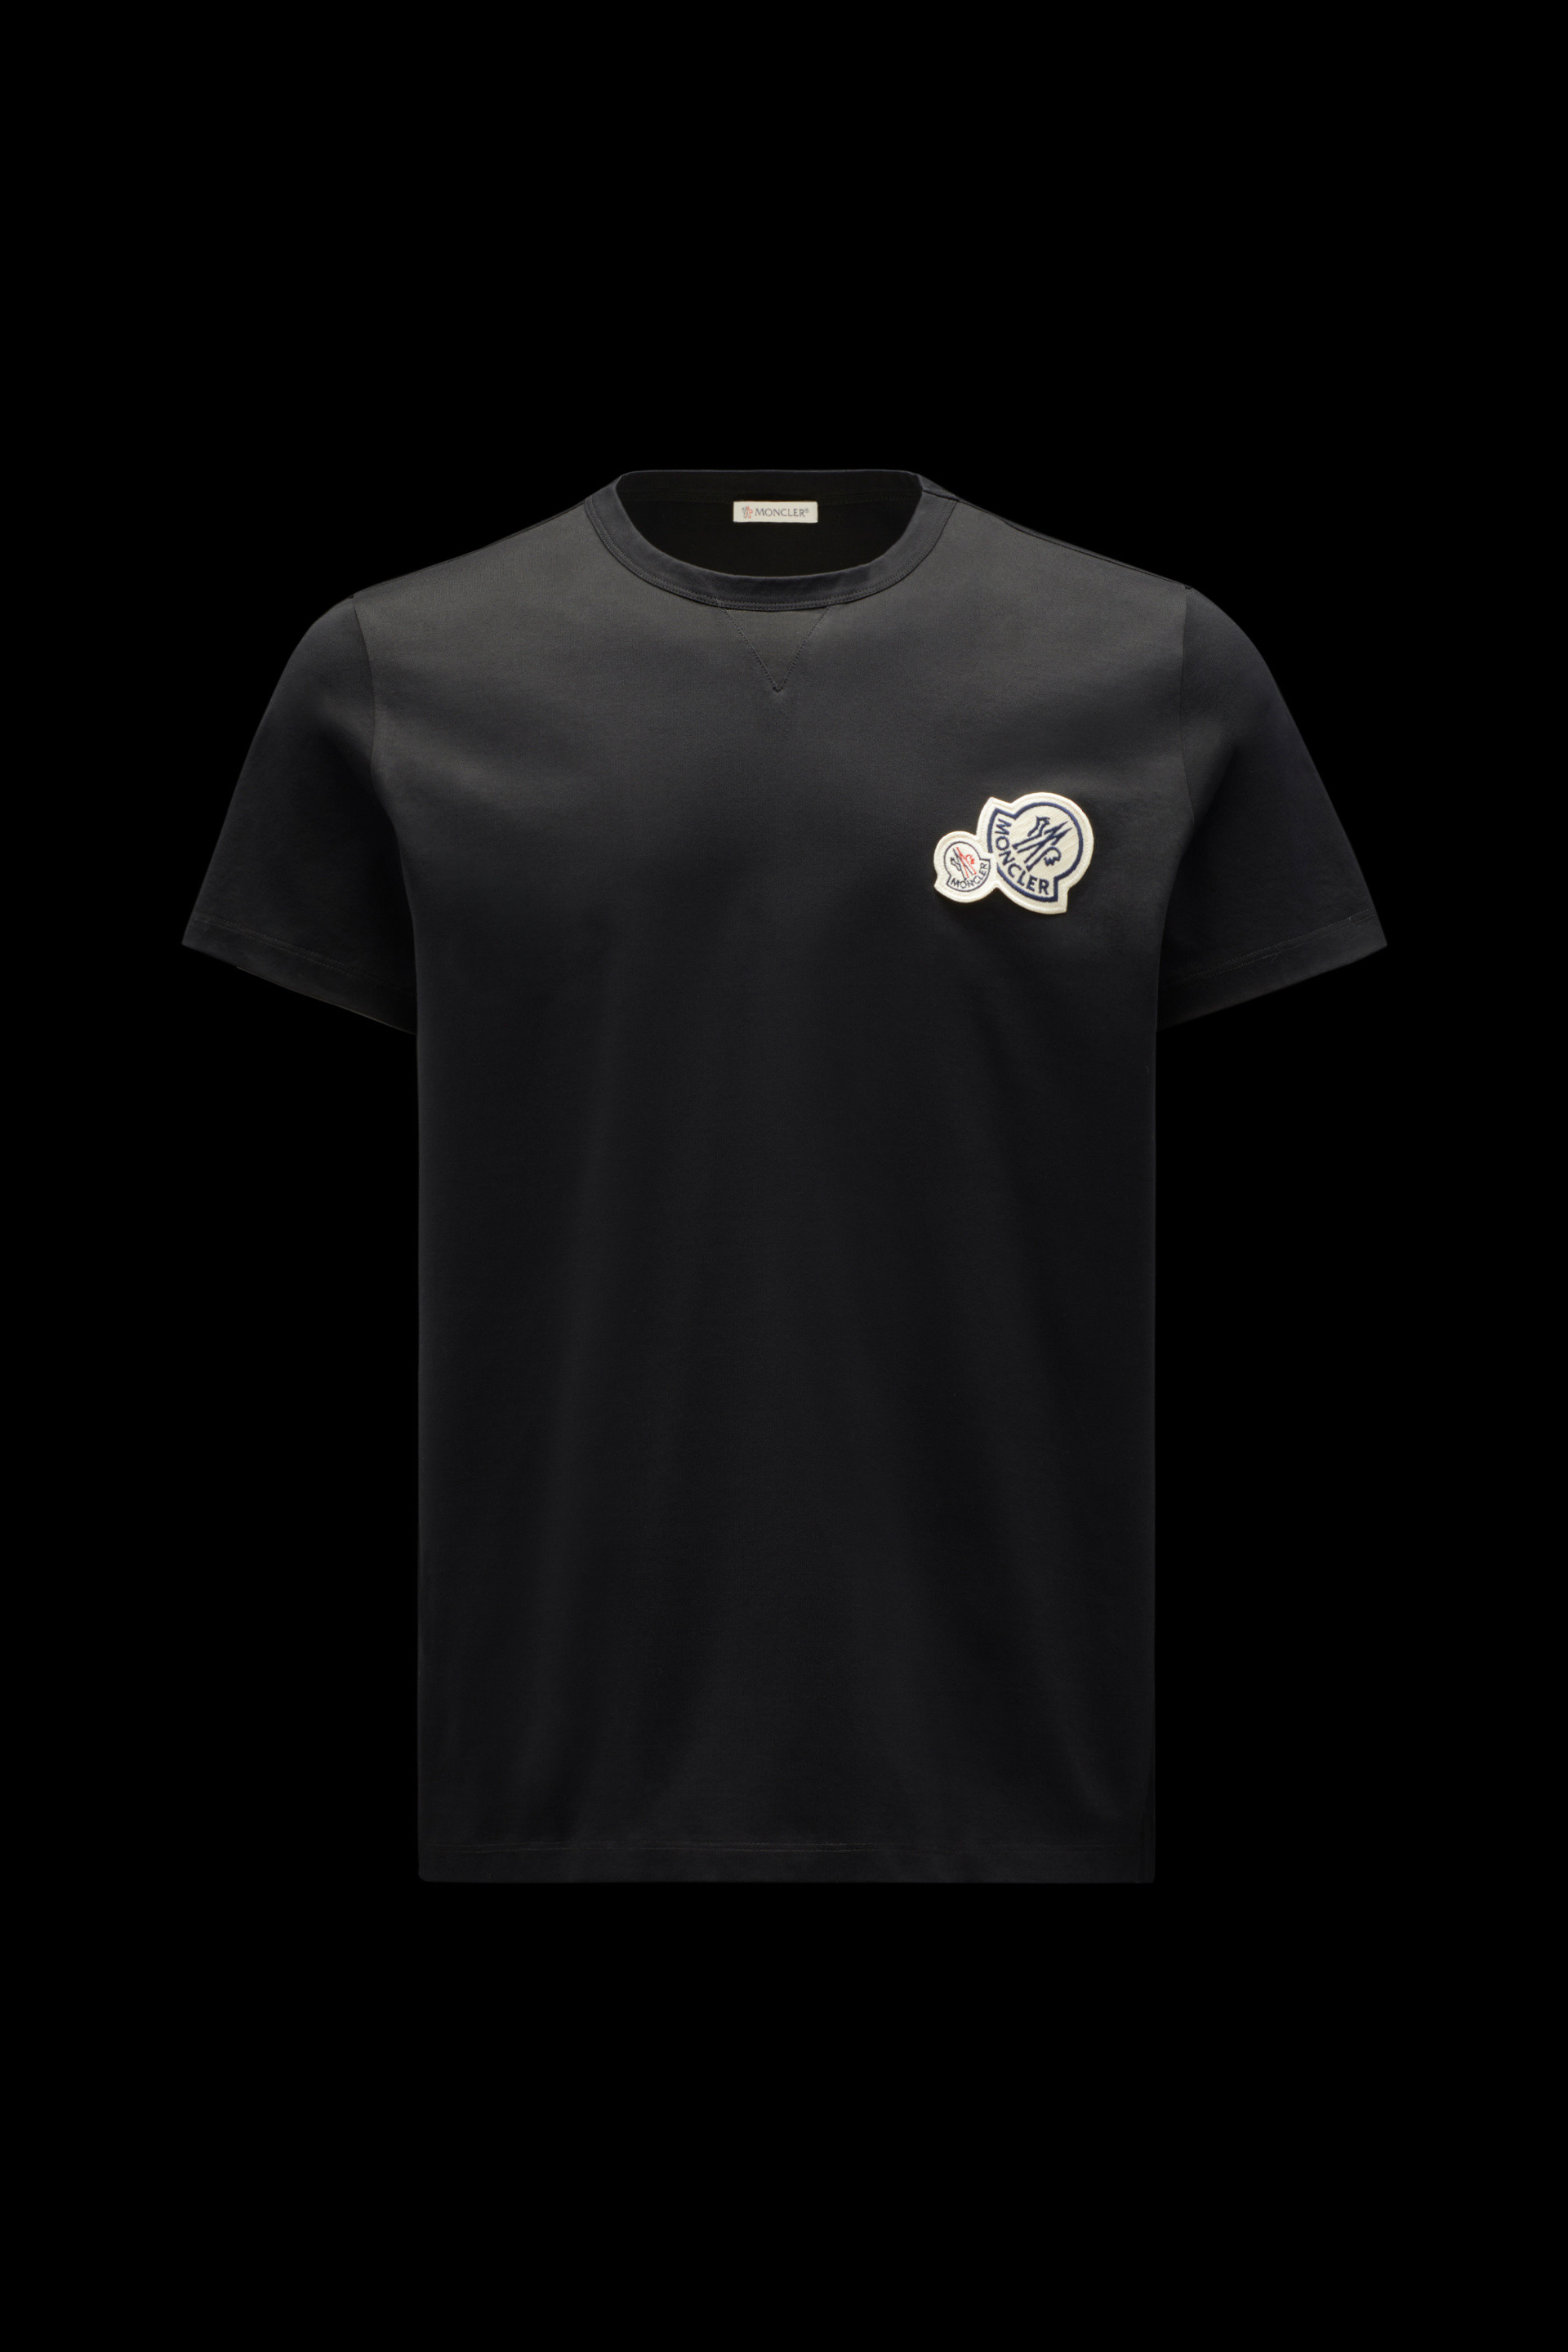 販売実績No.1 Moncler Tシャツ 3broadwaybistro.com